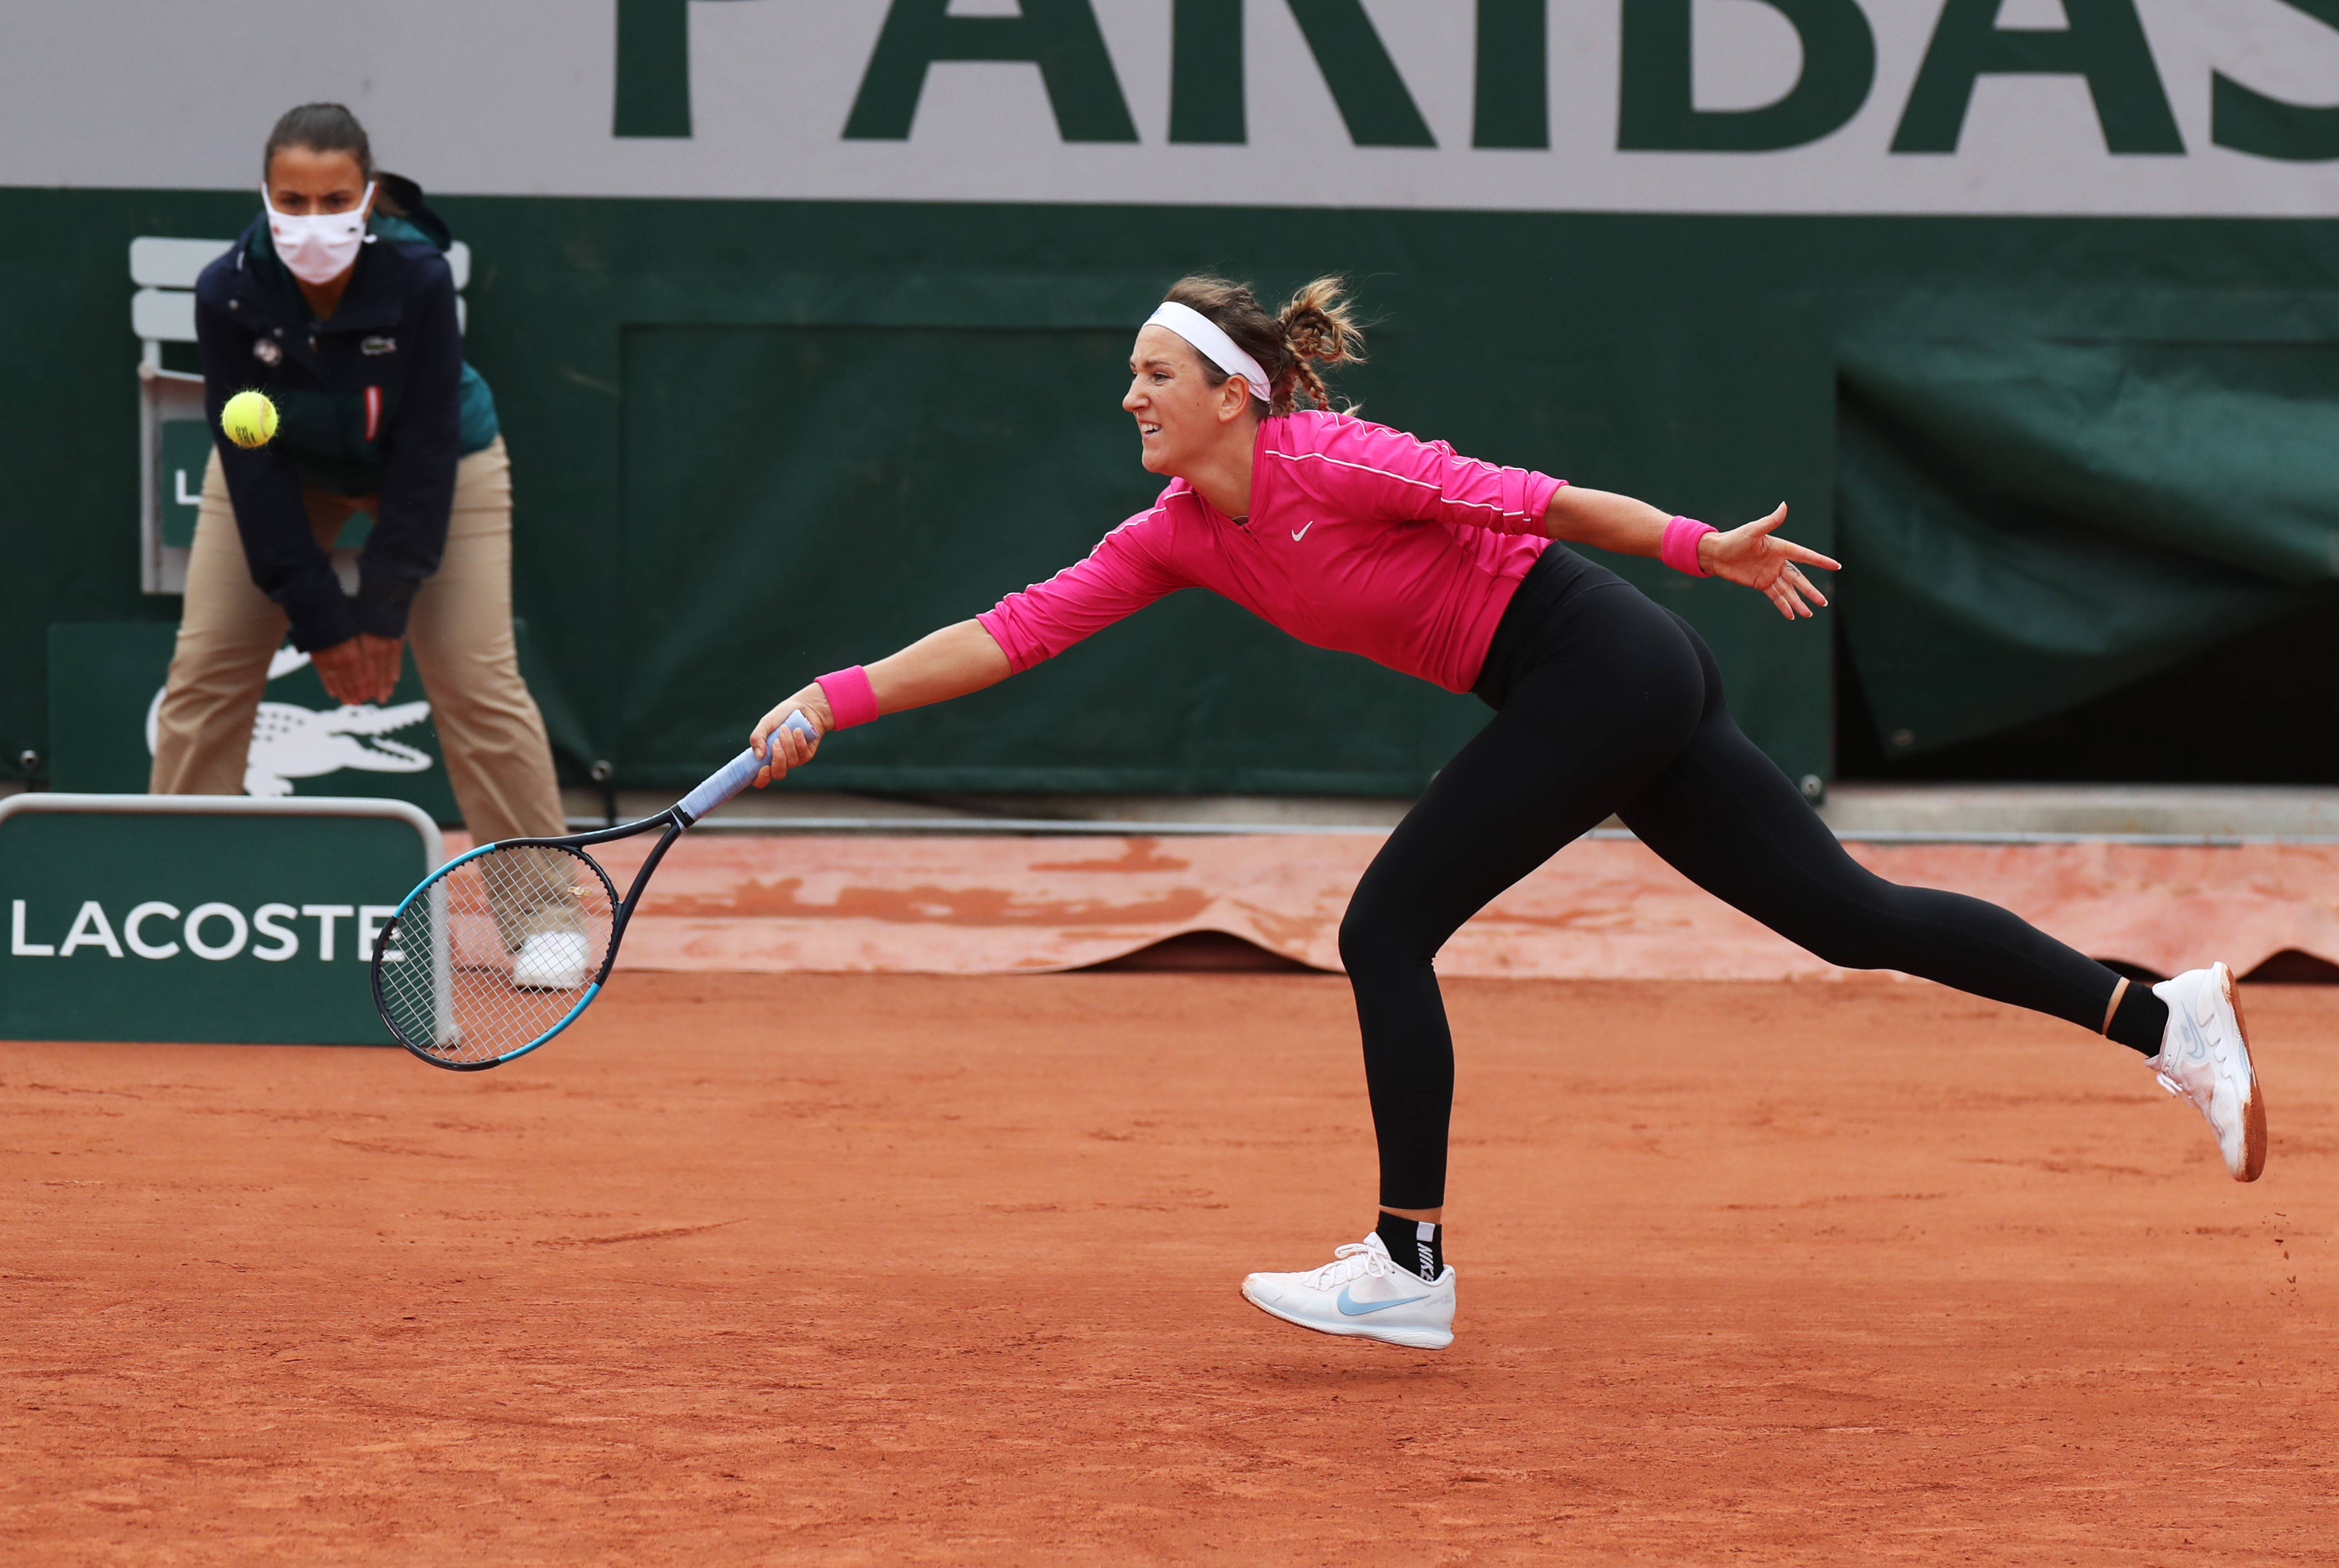 法国网球公开赛女单第二轮比赛中,白俄罗斯选手阿扎伦卡以0比2不敌